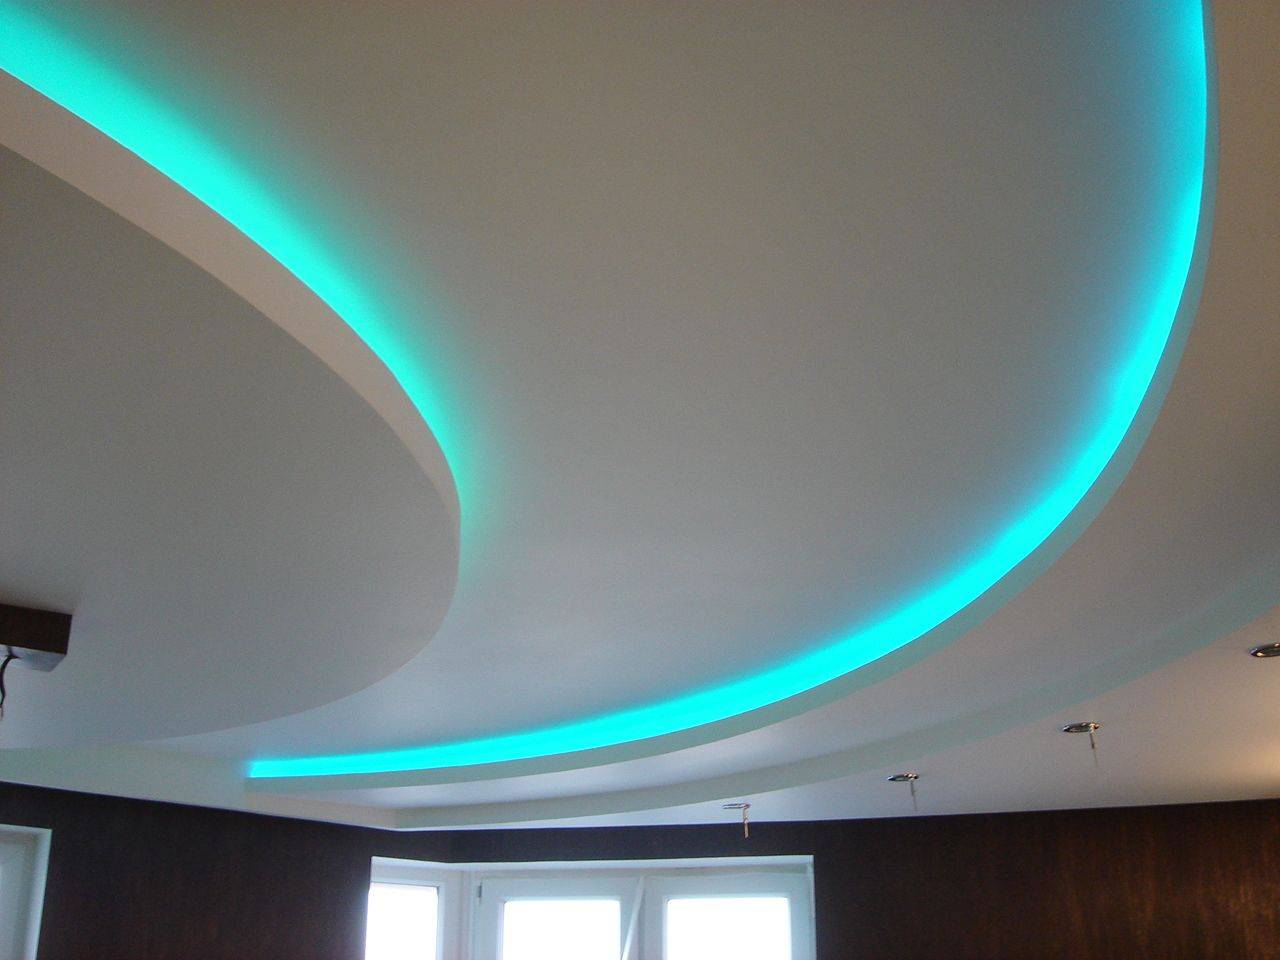 Светодиодная лента под натяжным потолком (33 фото): как сделать и установить подсветку на натяжном потолке, варианты монтажа диодной ленты